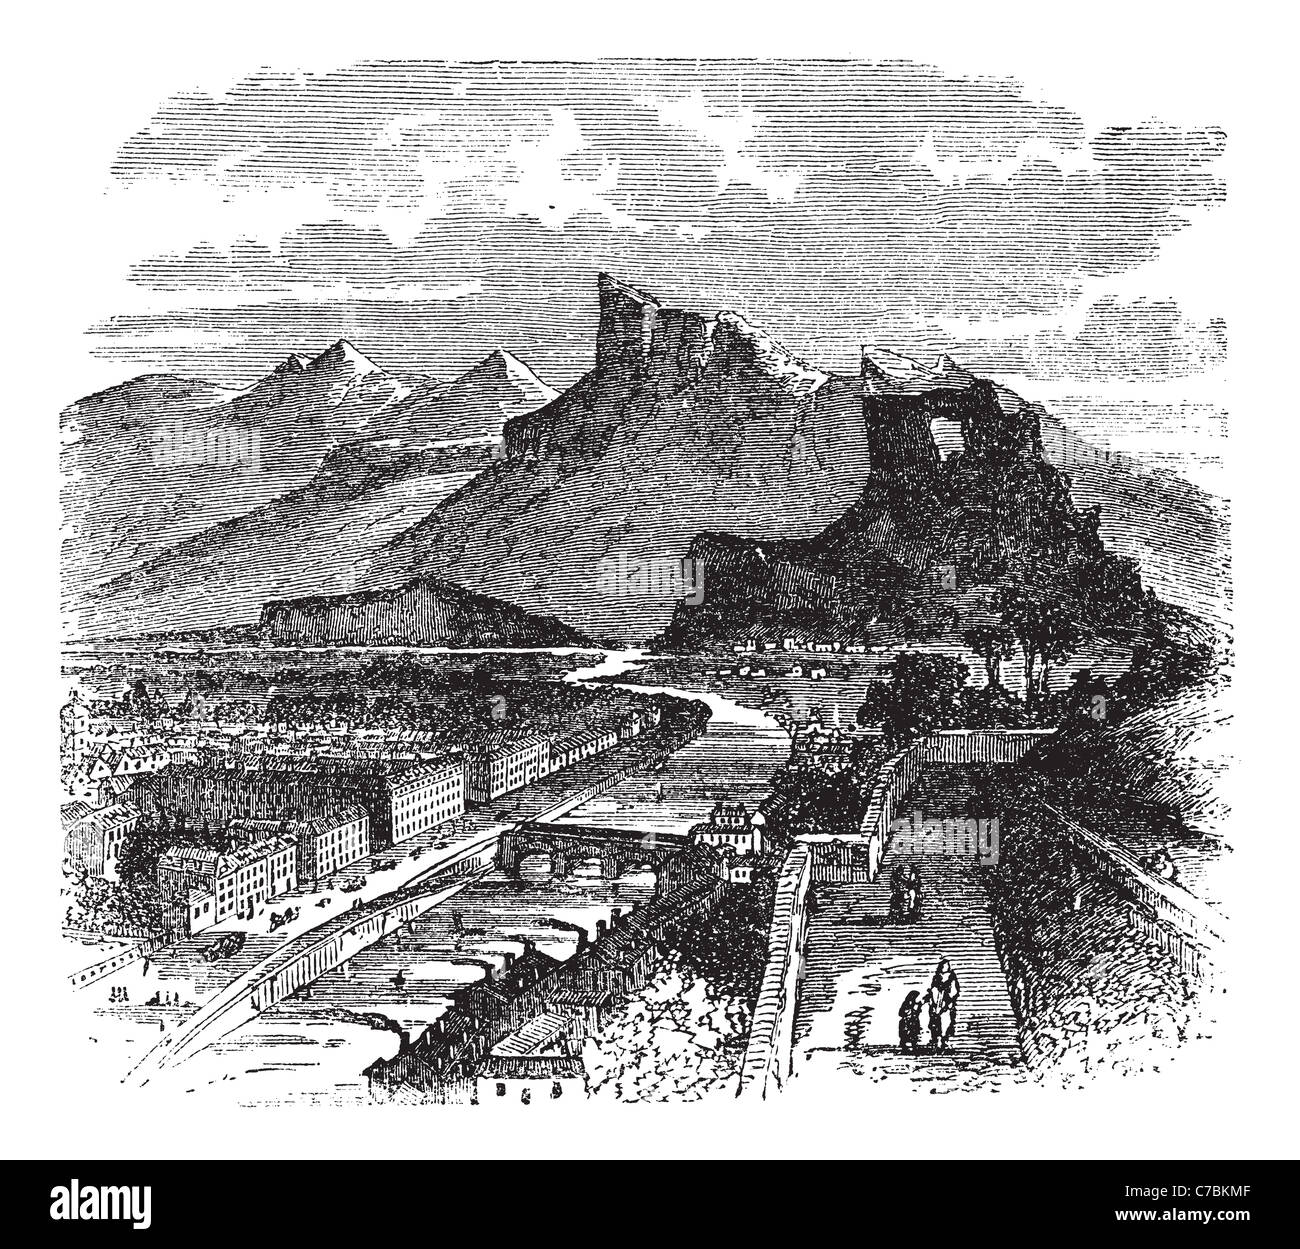 Vue de Grenoble, France vintage la gravure. Vieille illustration gravée de bâtiments et les montagnes, années 1890. Banque D'Images